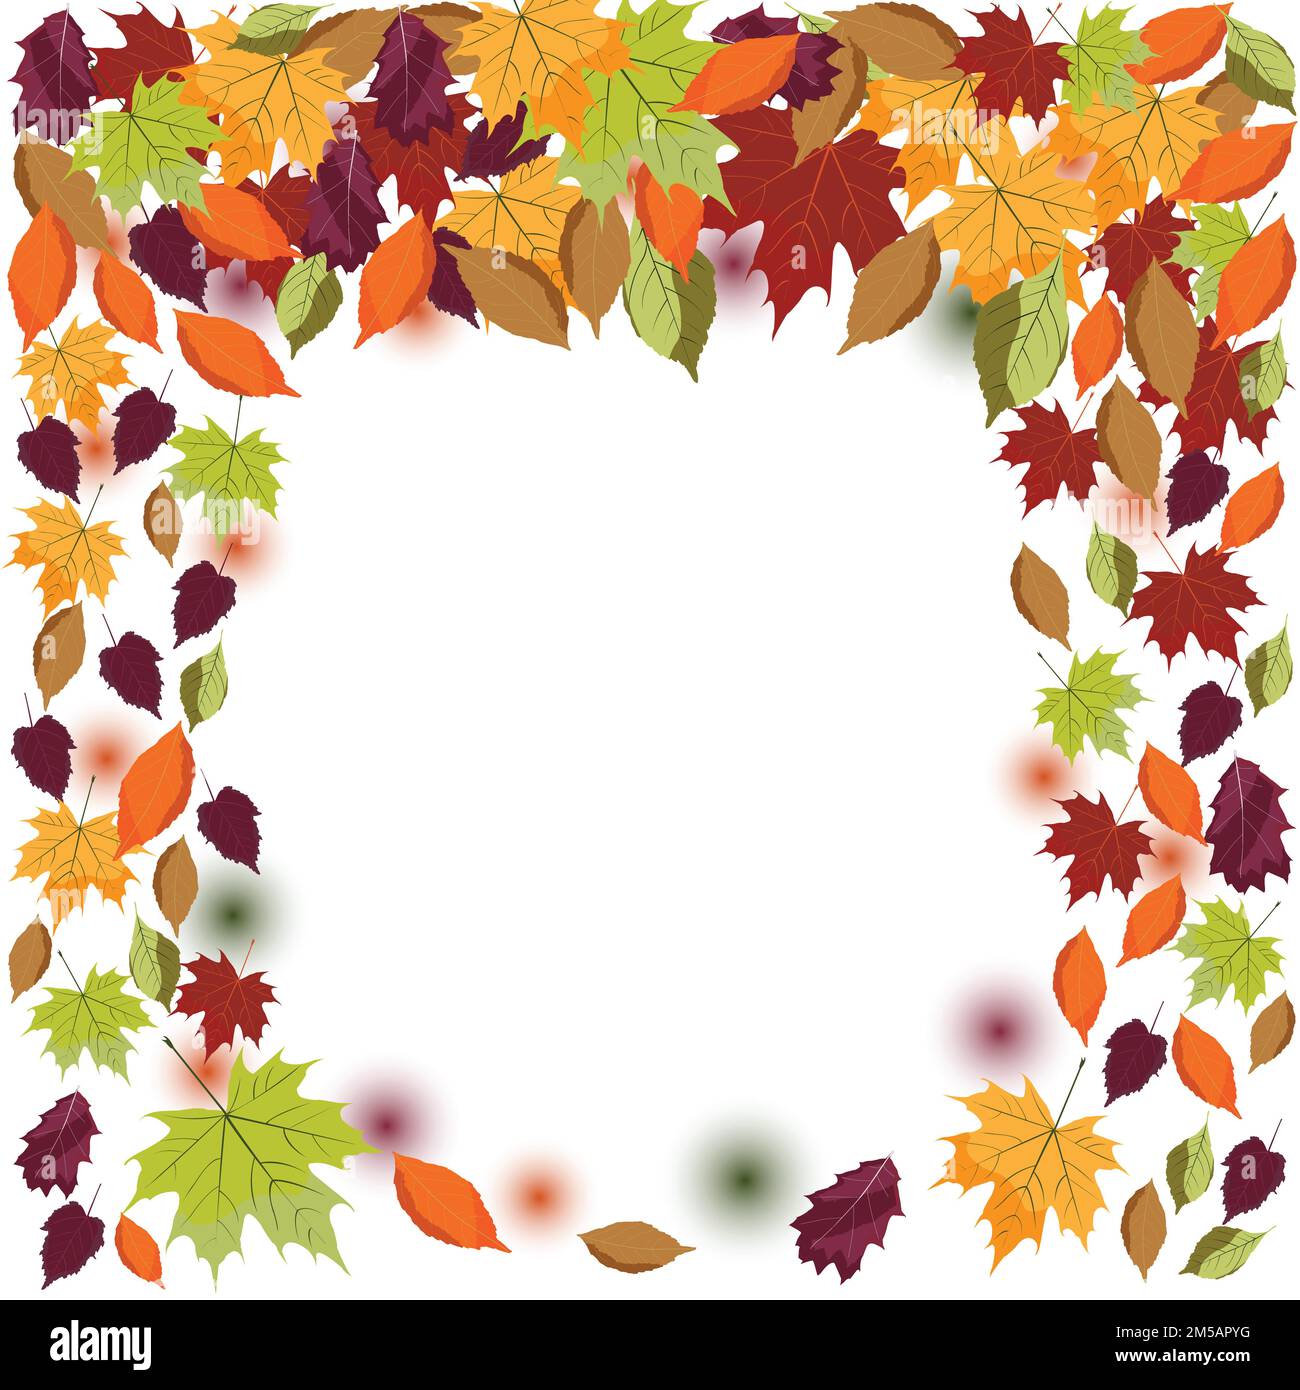 La caída de las hojas de otoño ilustración; Hoja cayendo; naranja, violeta, verde, marrón otoño hojas; venta; Ilustración del Vector